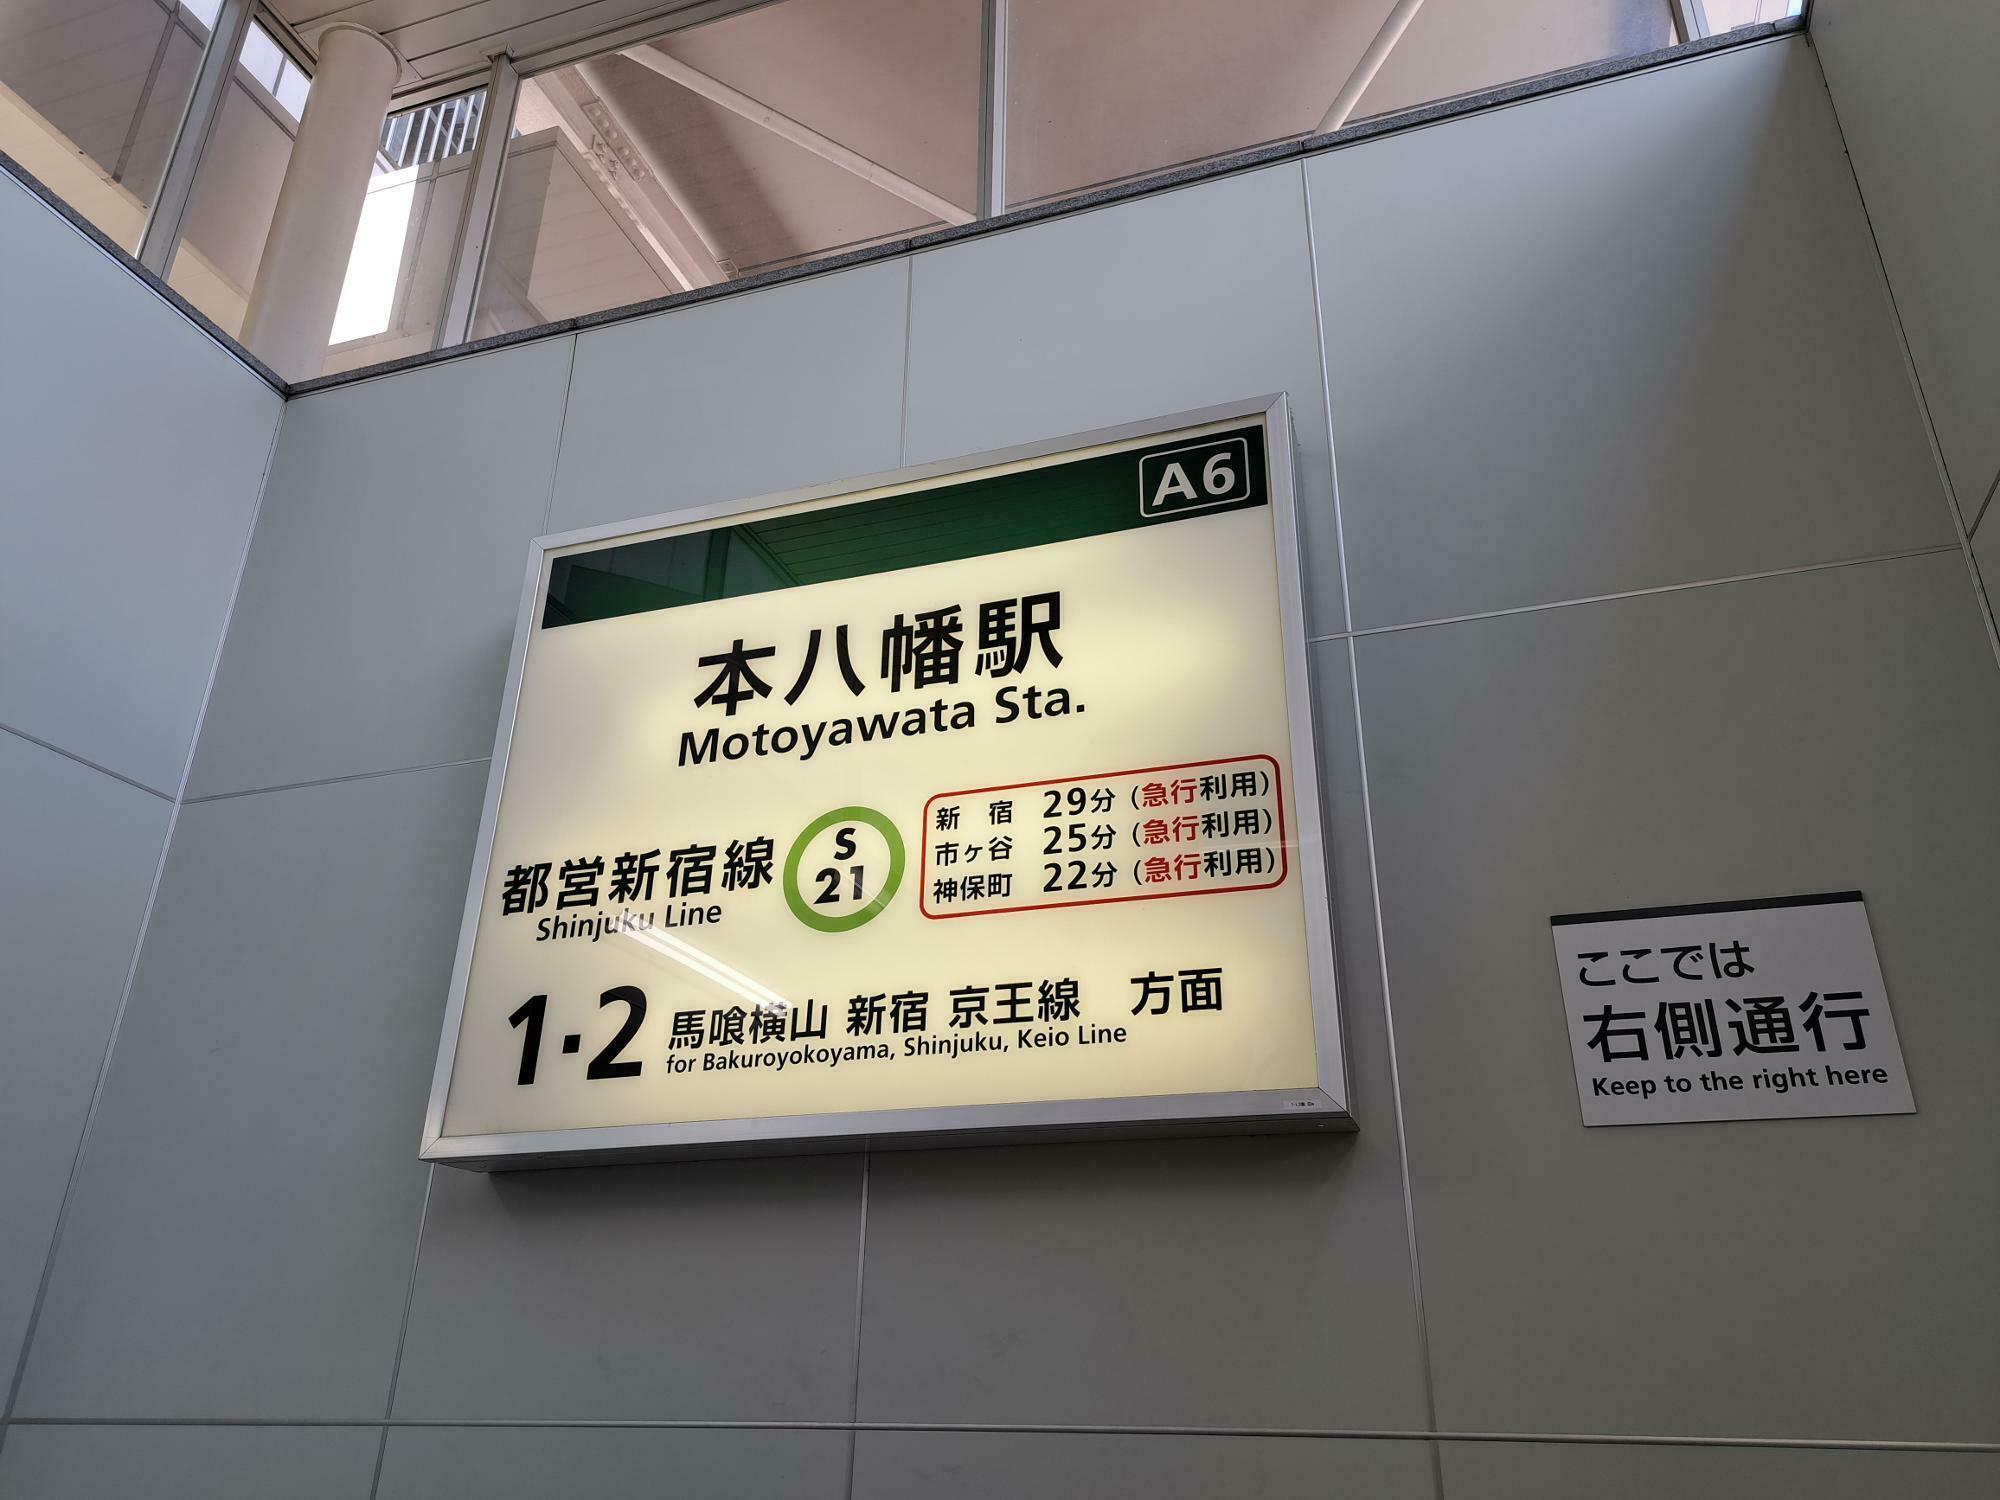 本八幡駅には急行利用で新宿まで29分という表示